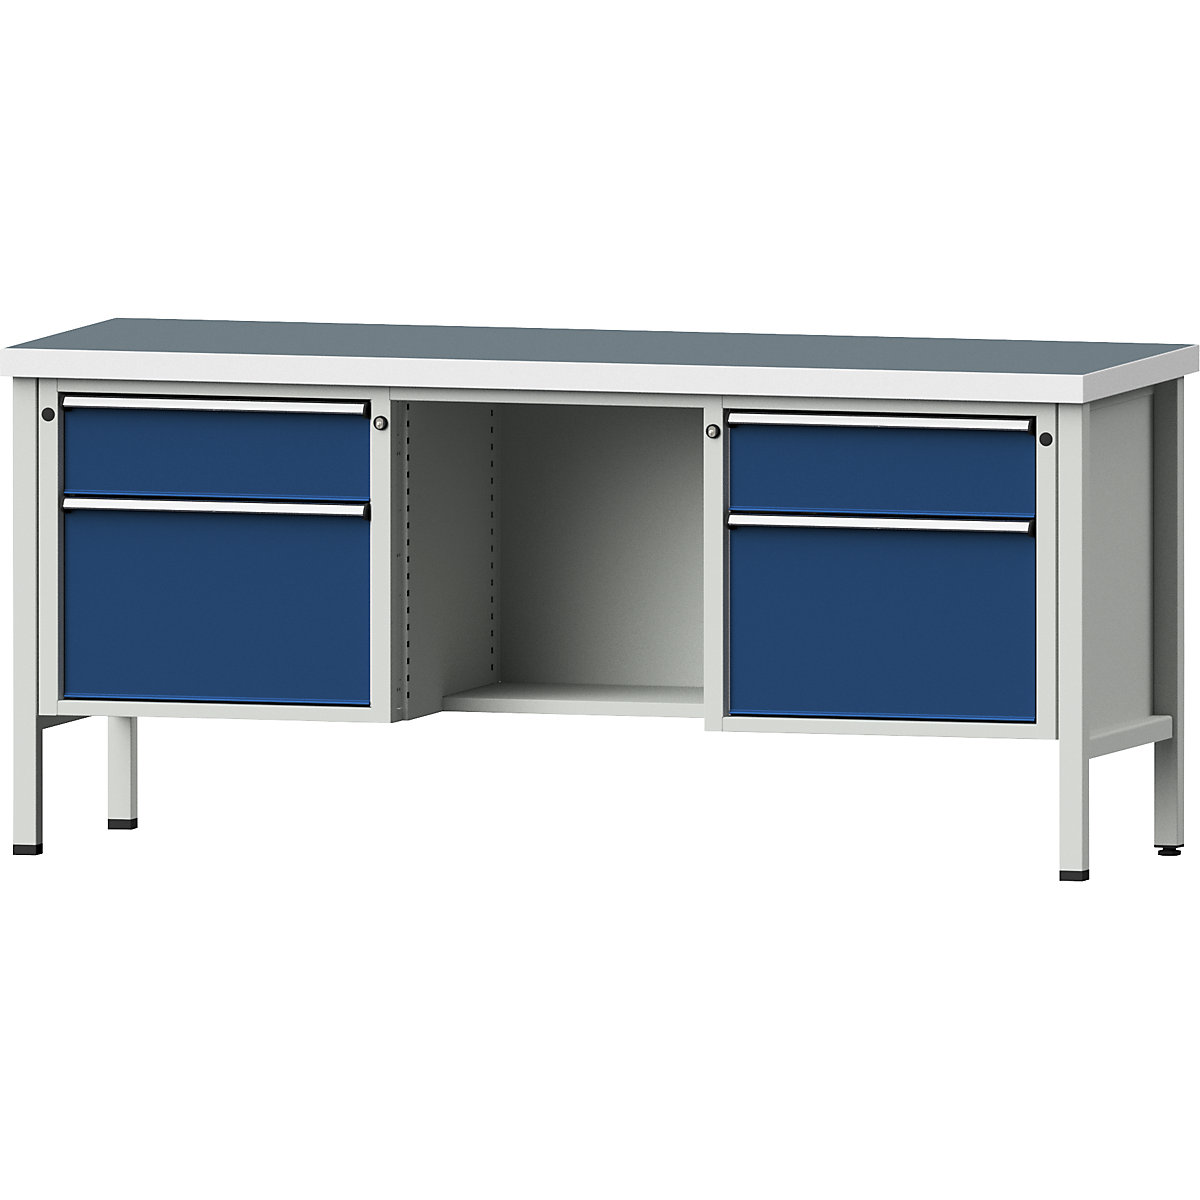 Dílenský stůl s rámovou konstrukcí – ANKE, zásuvky 2 x 180 mm, 2 x 360 mm, ½ odkládací police, výška 890 mm, univerzální deska-7